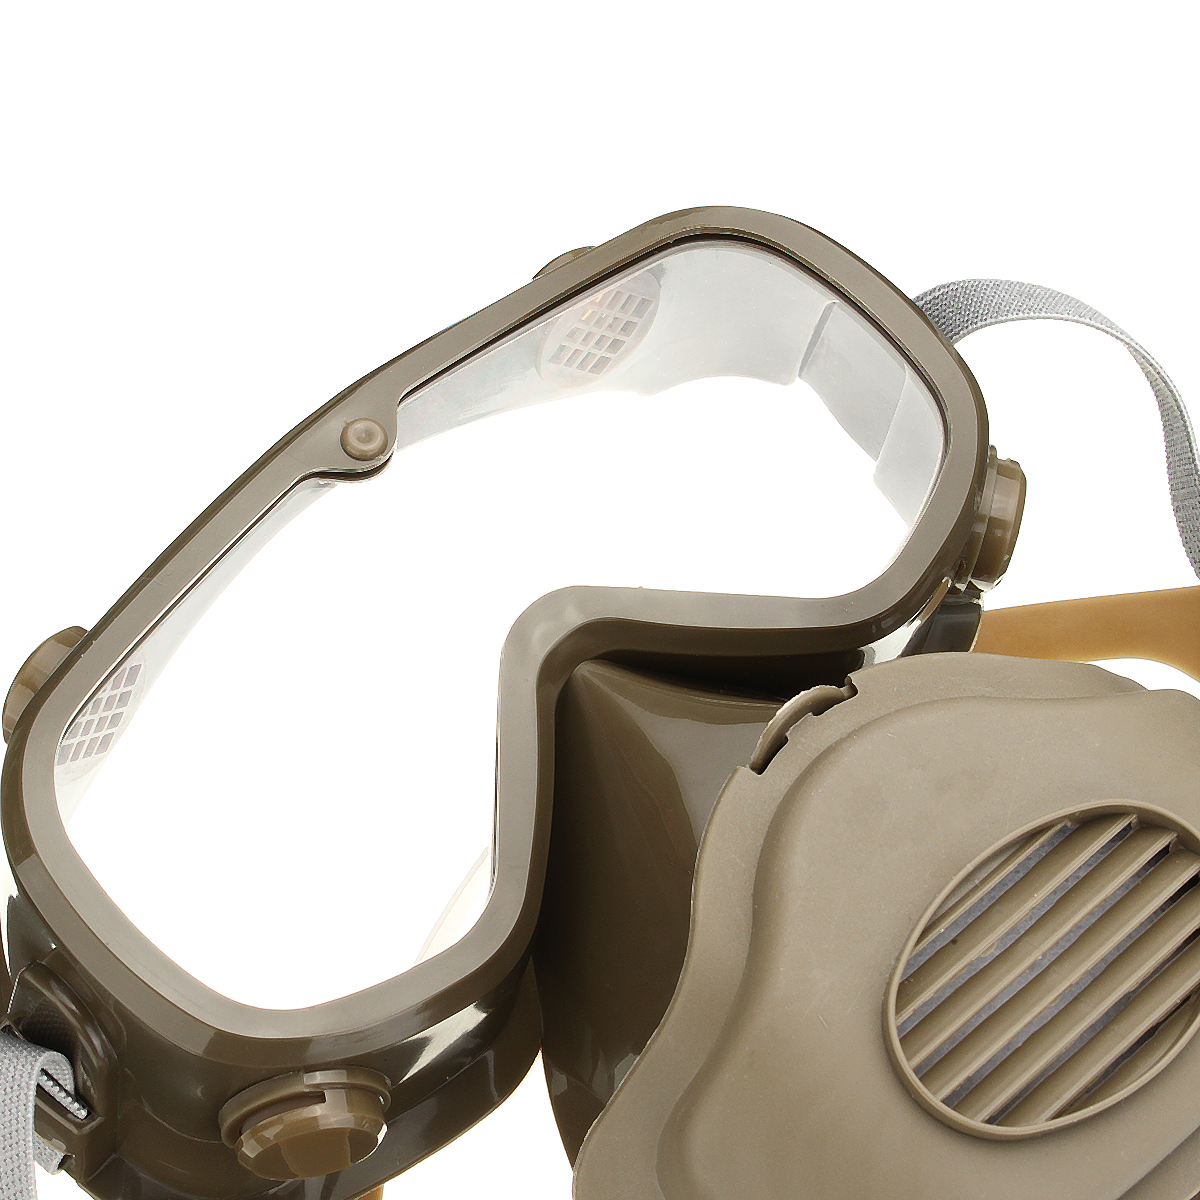 Защитные очки от пыли. Очки-полумаска z502 Atemi. Защитные маски МТС 002. Полумаска для сварщика Tusa. Респиратор и защитные очки.